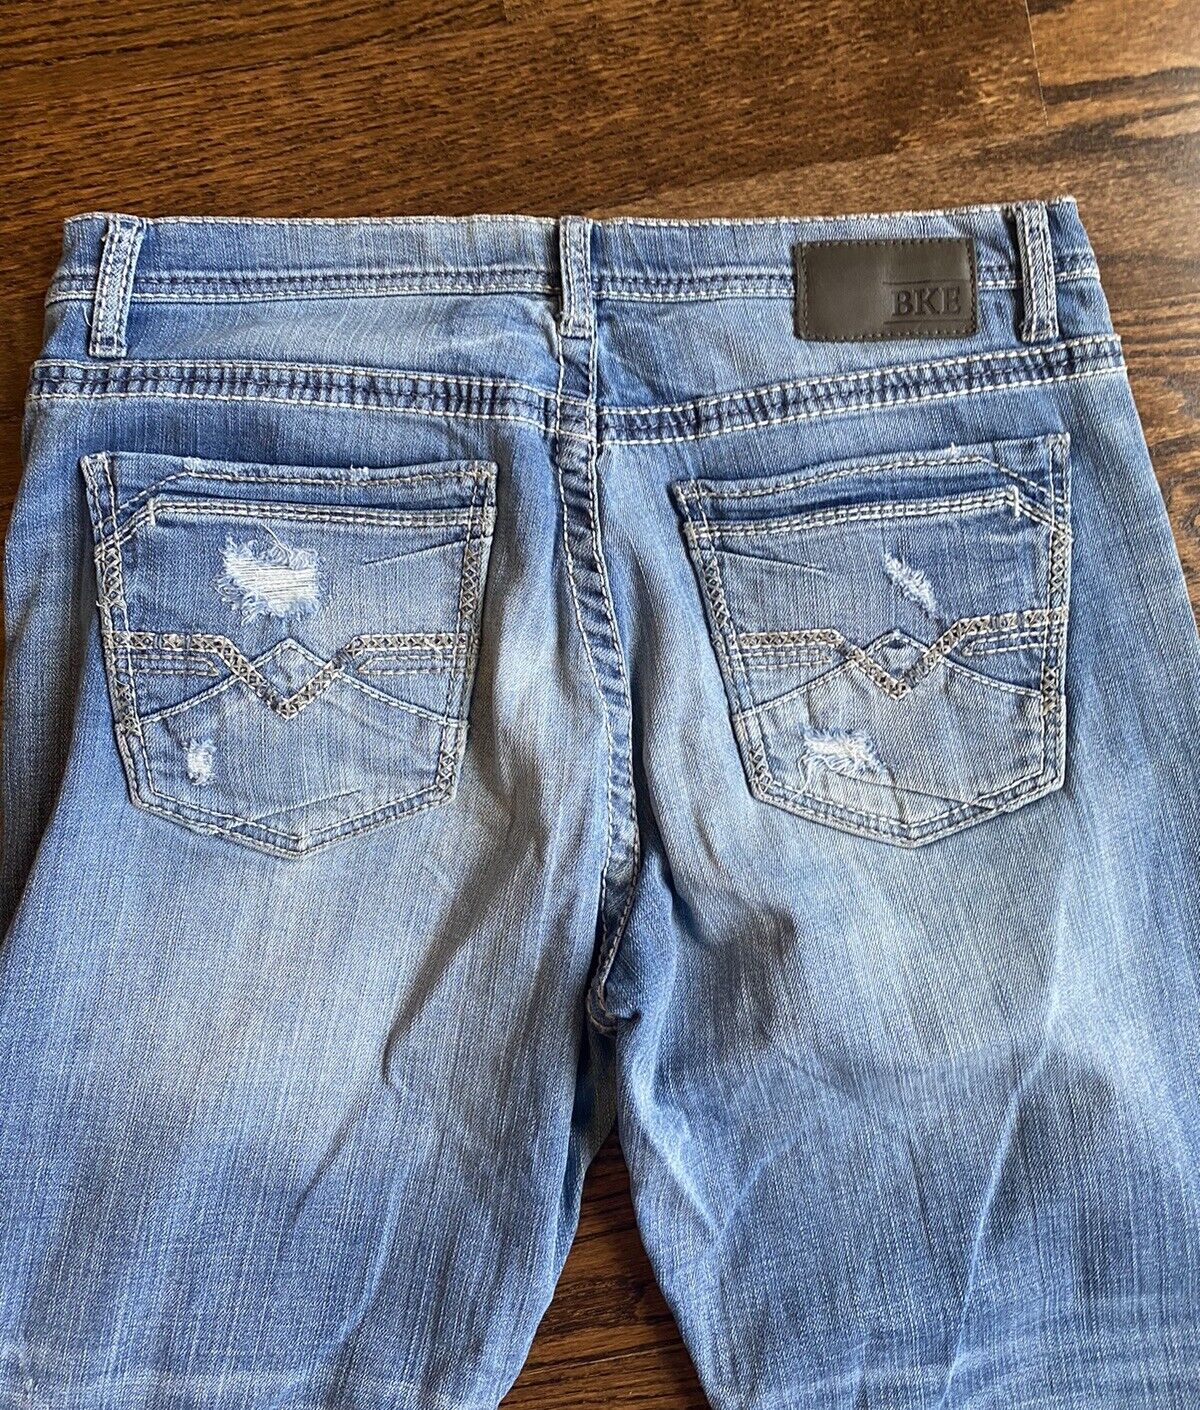 Buckle BKE Derek Men’s Jeans Bootleg Distressed  … - image 7